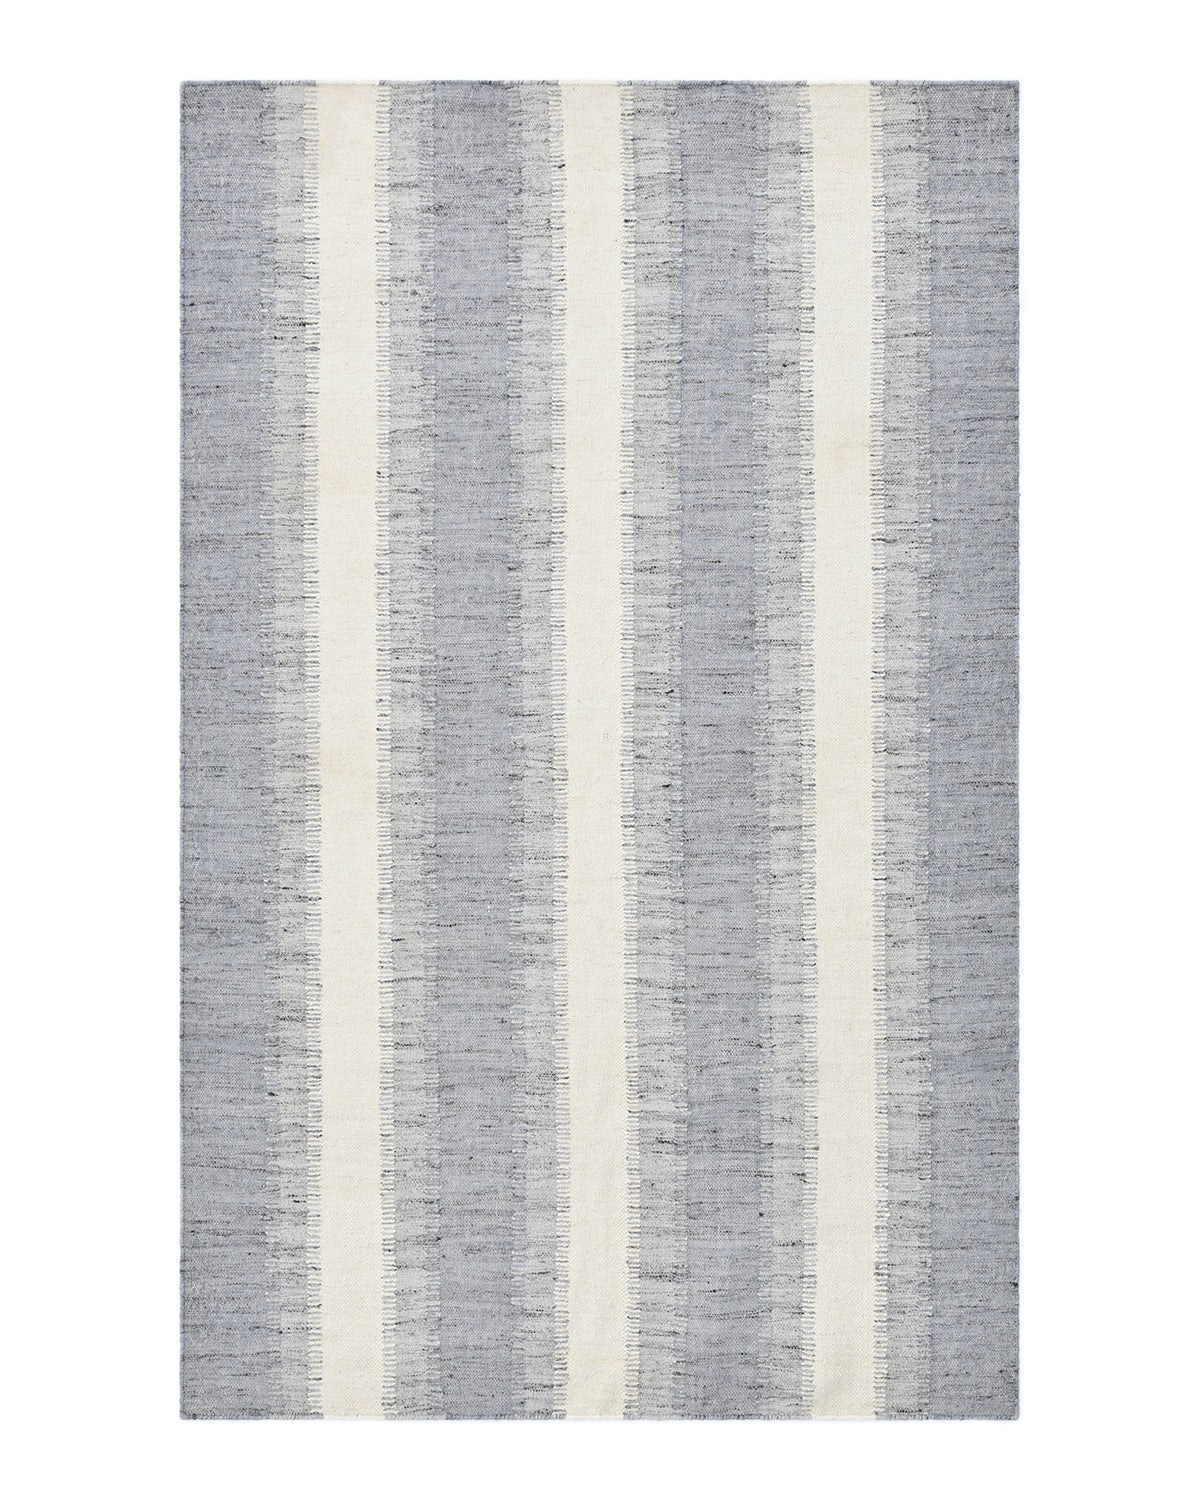 Levi Handmade Contemporary Striped Gray Area Rug